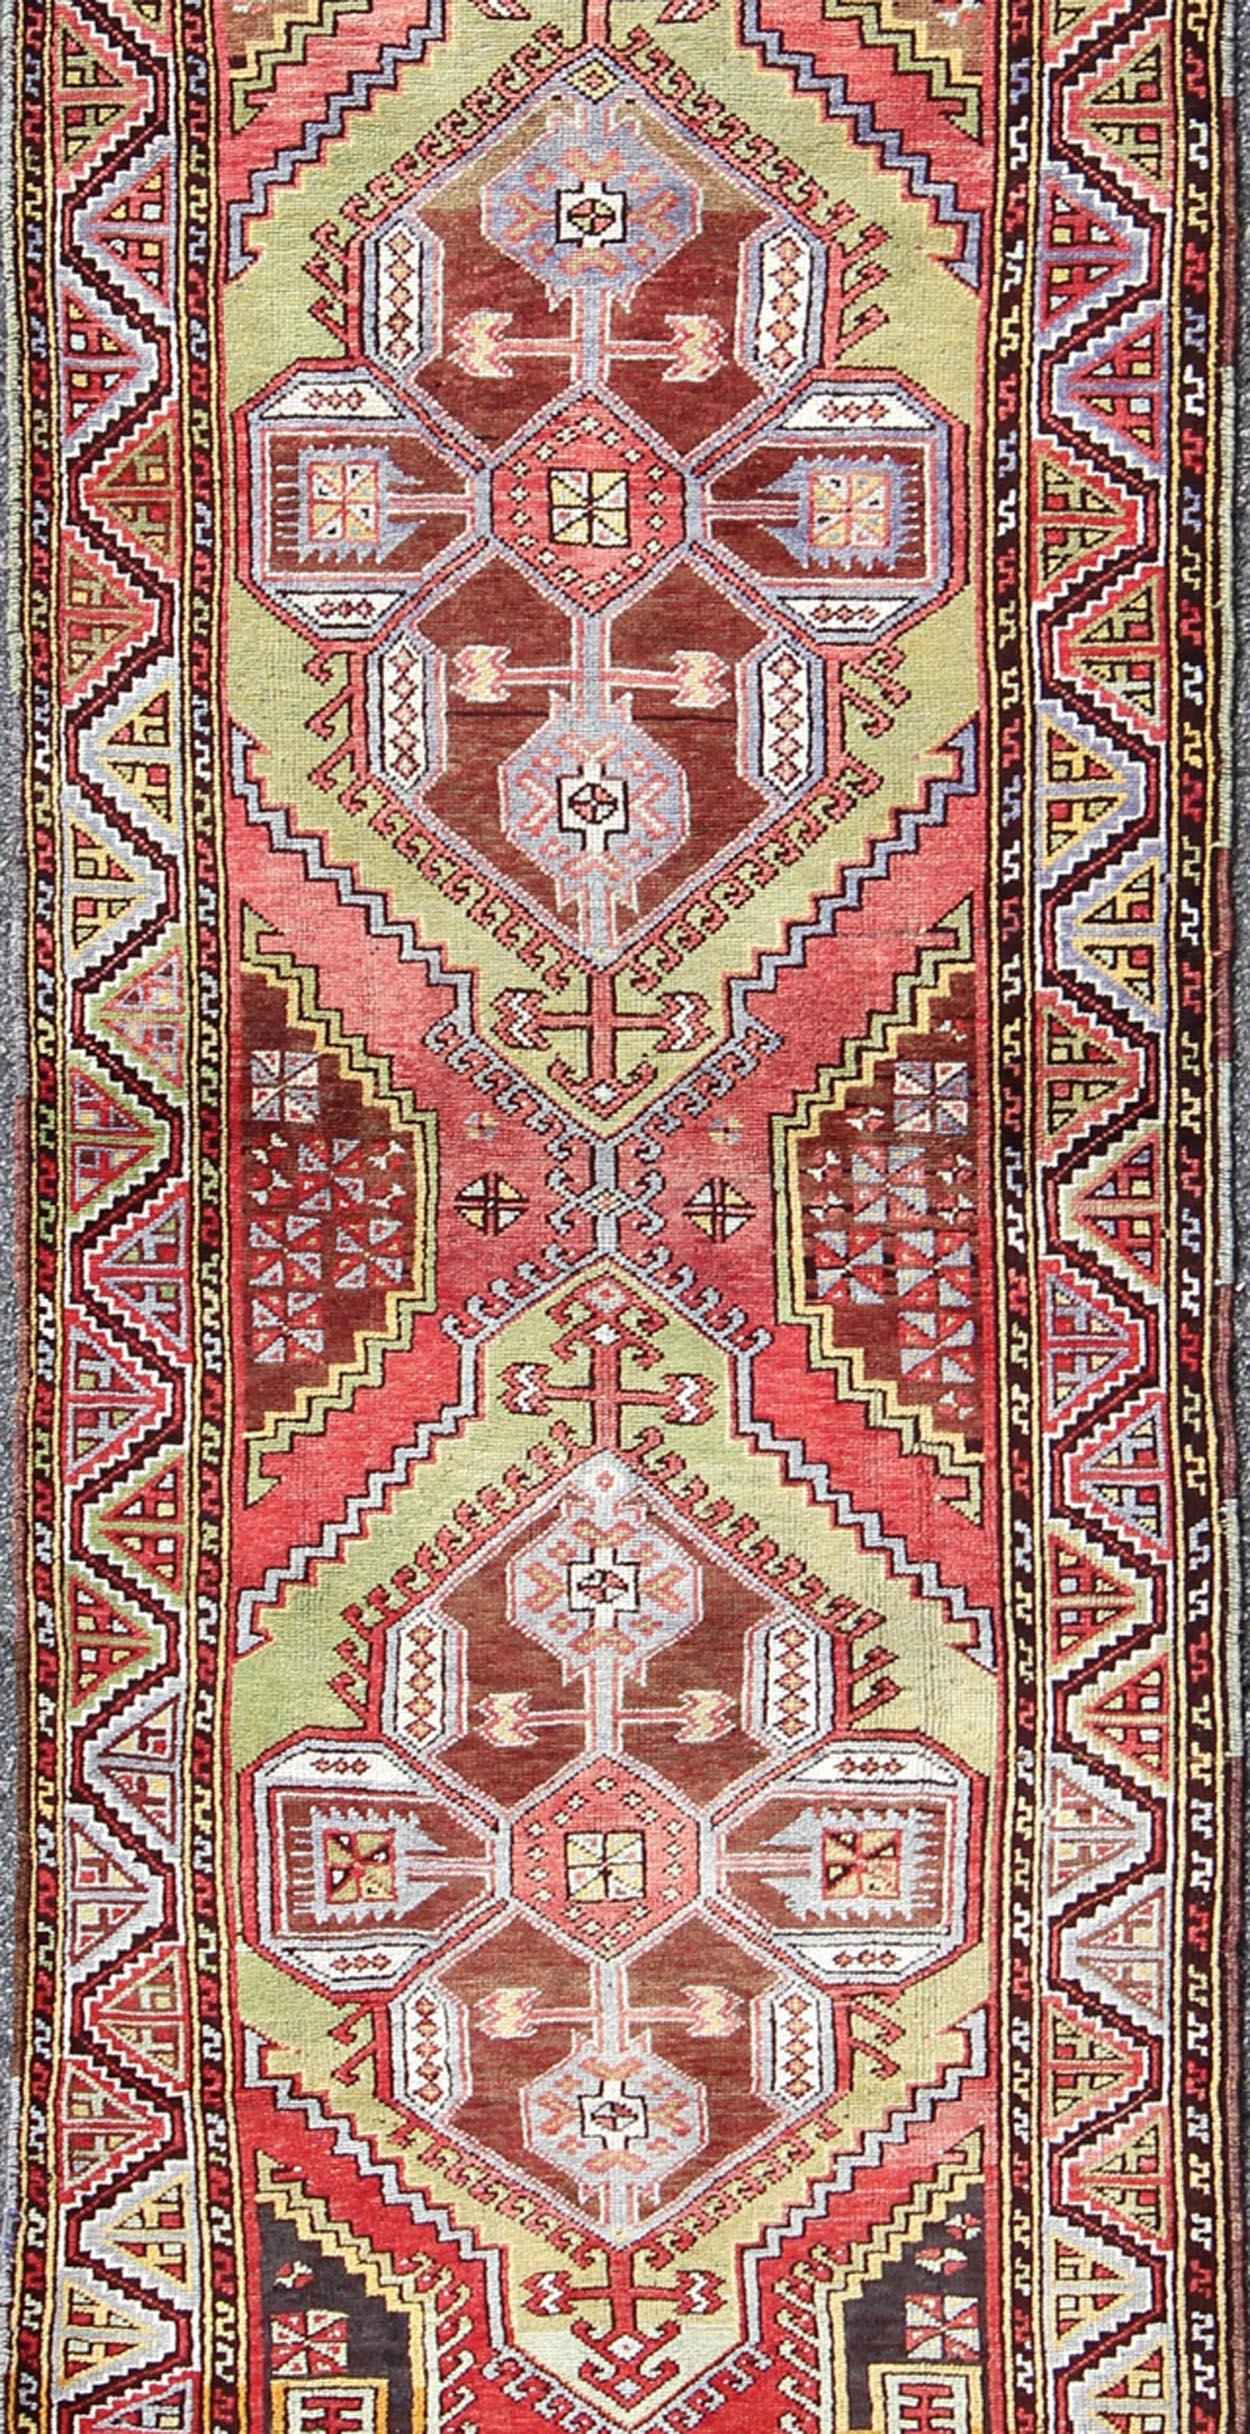 Mesures : 3'7 x 10'10

Ce chemin de table turc Oushak vintage (vers 1940) présente des couleurs printanières vives et éclatantes, comme le rouge rose, le vert gazon, la lavande, le bleu et le rose. La bordure reprend un motif tribal en zigzag,